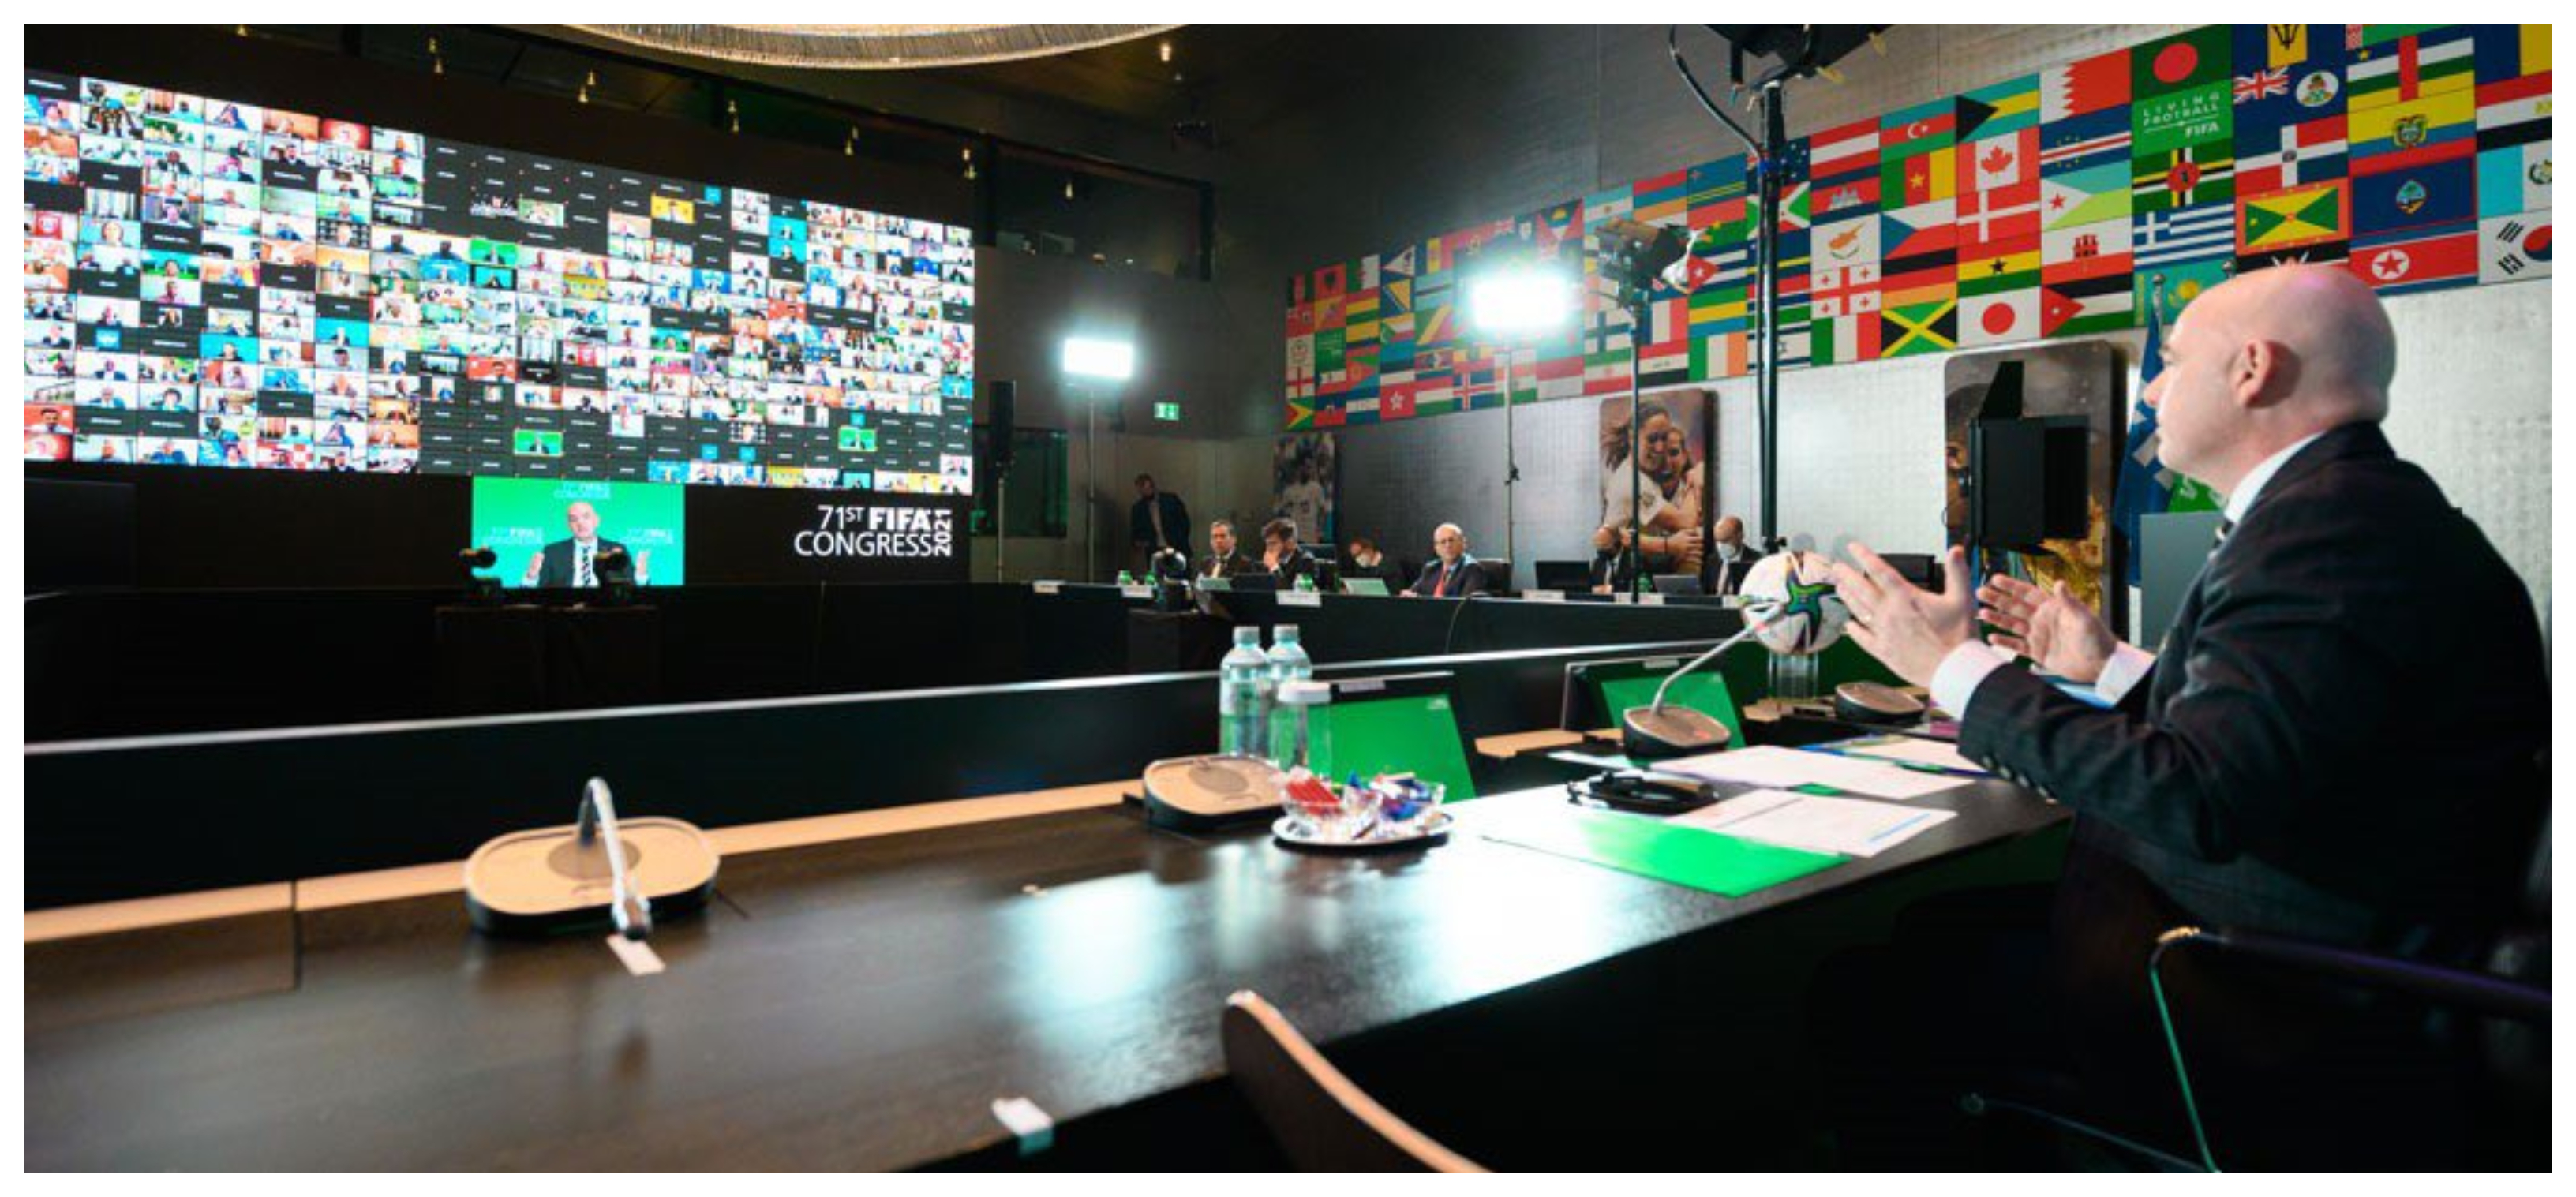 El presidente de la Fifa, Gianni Infantino, durante el congreso que se llevó a cabo en forma virtual. Foto Prensa Libre: Fifa.com